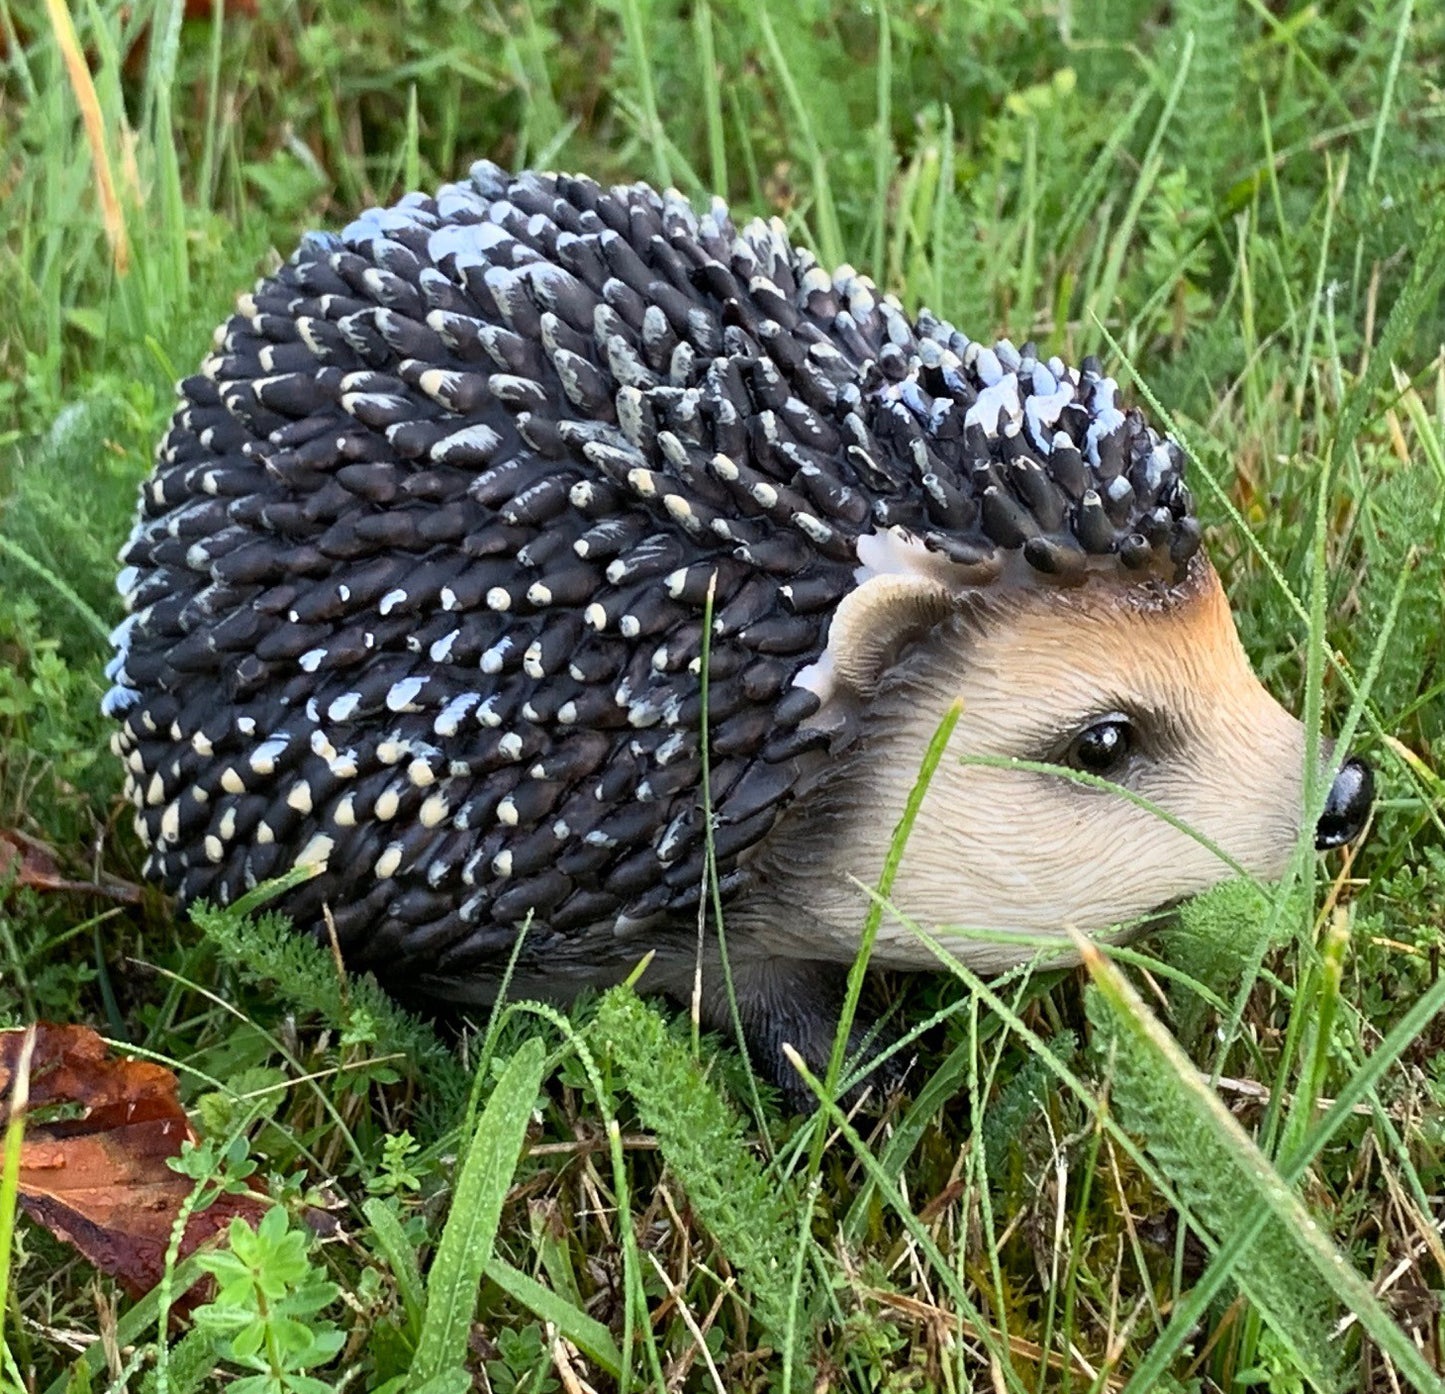 Hoglet Baby Hedgehog Resin Garden Ornament (Set of 2)